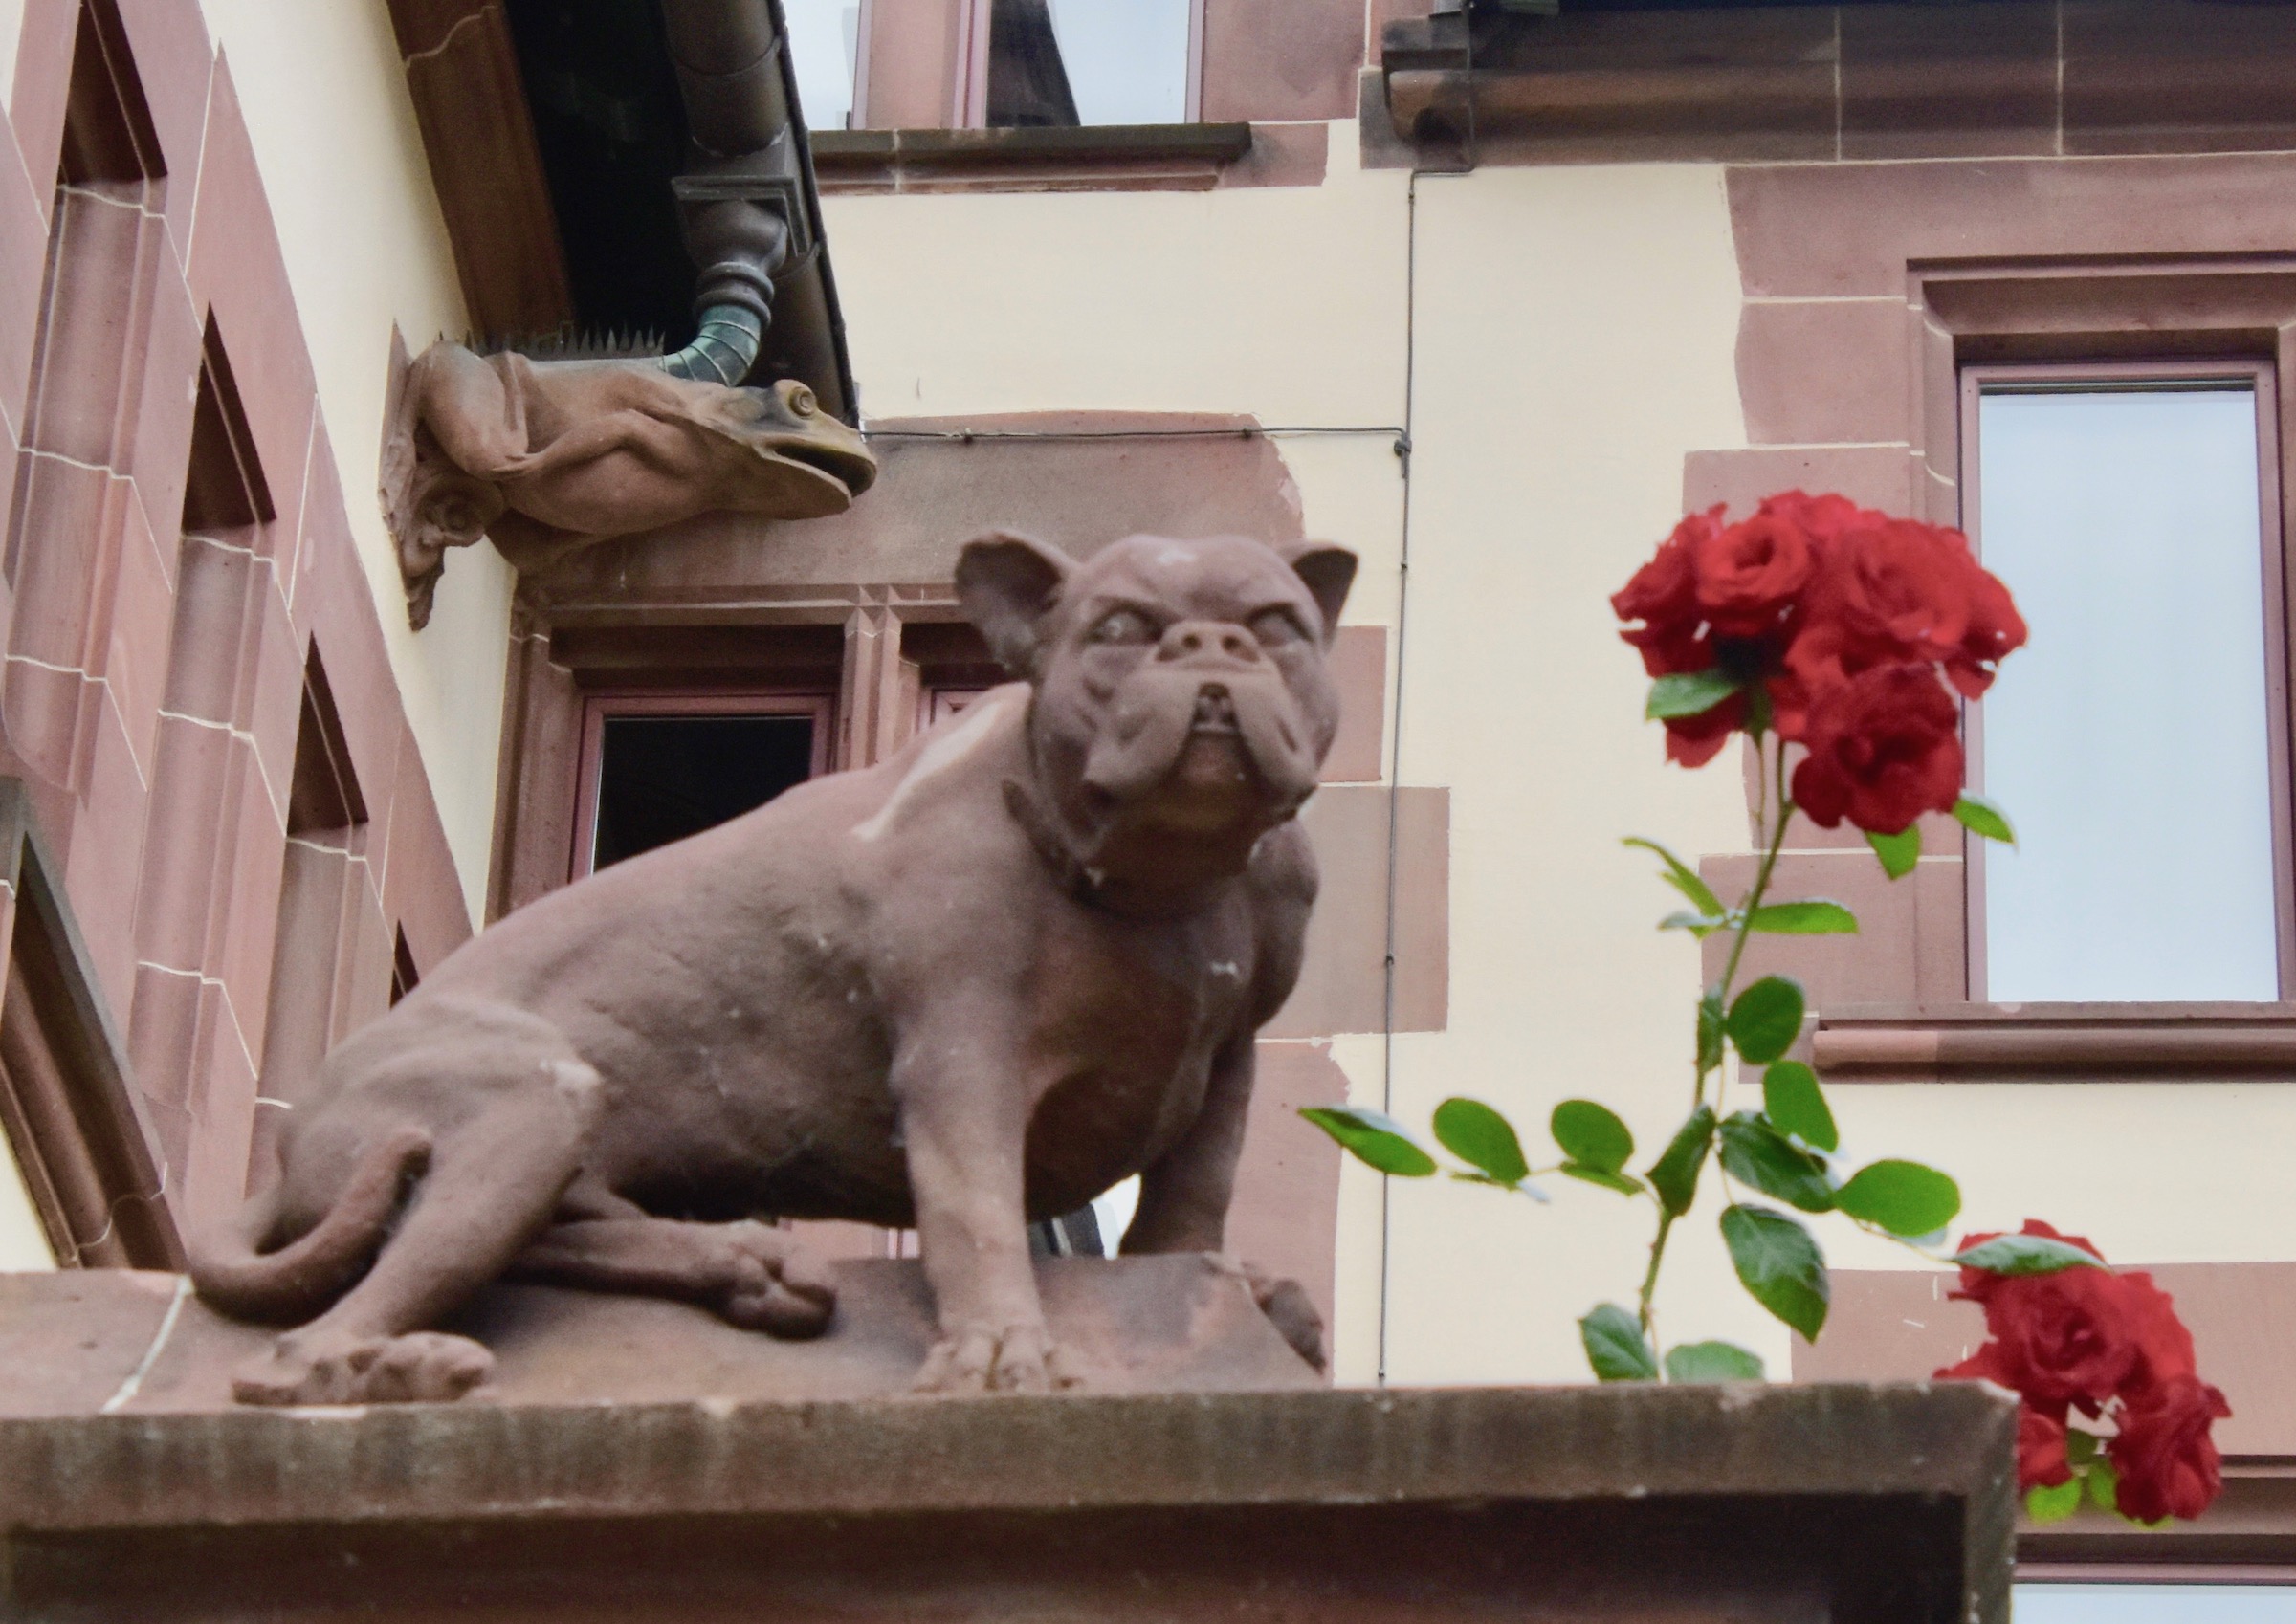 Dog, Frog & Roses, Basel